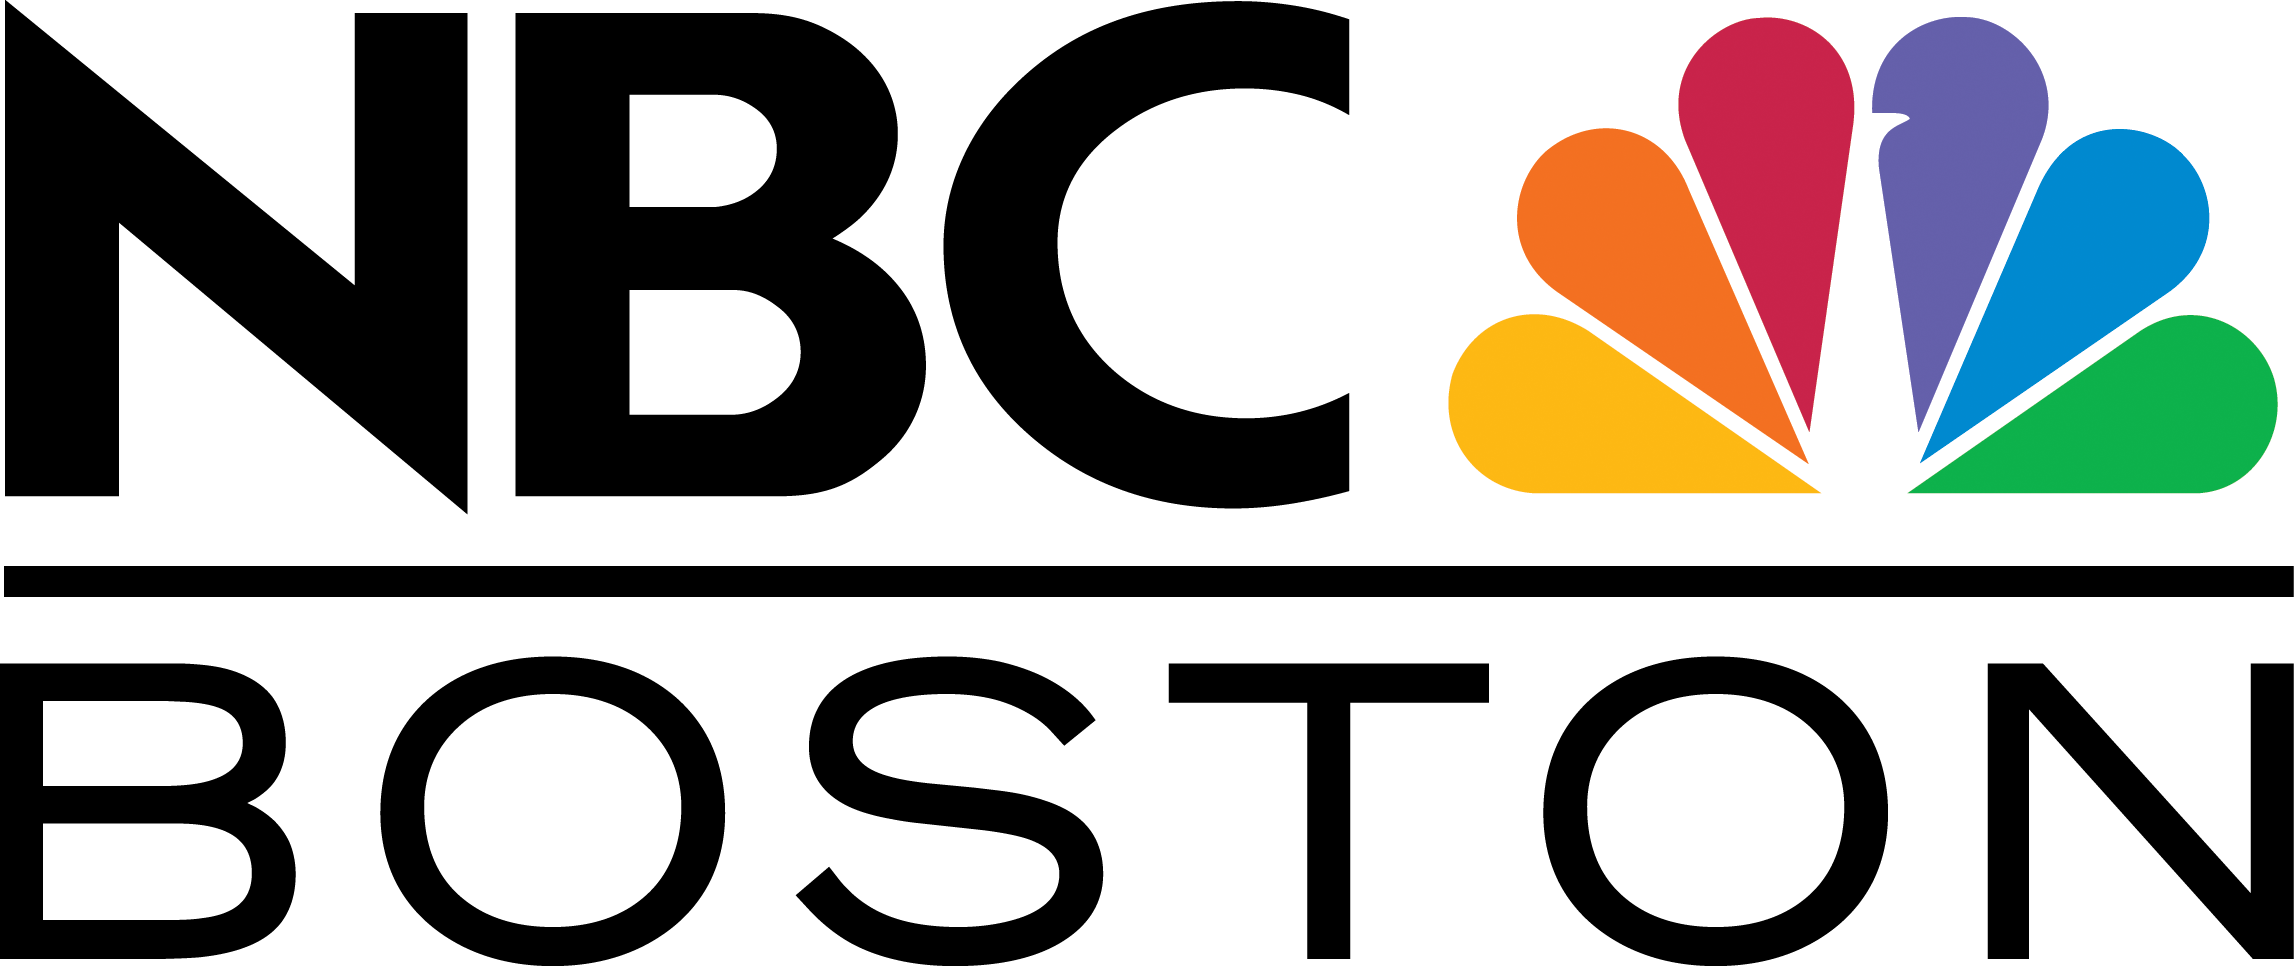 NBC_Boston_logo.png